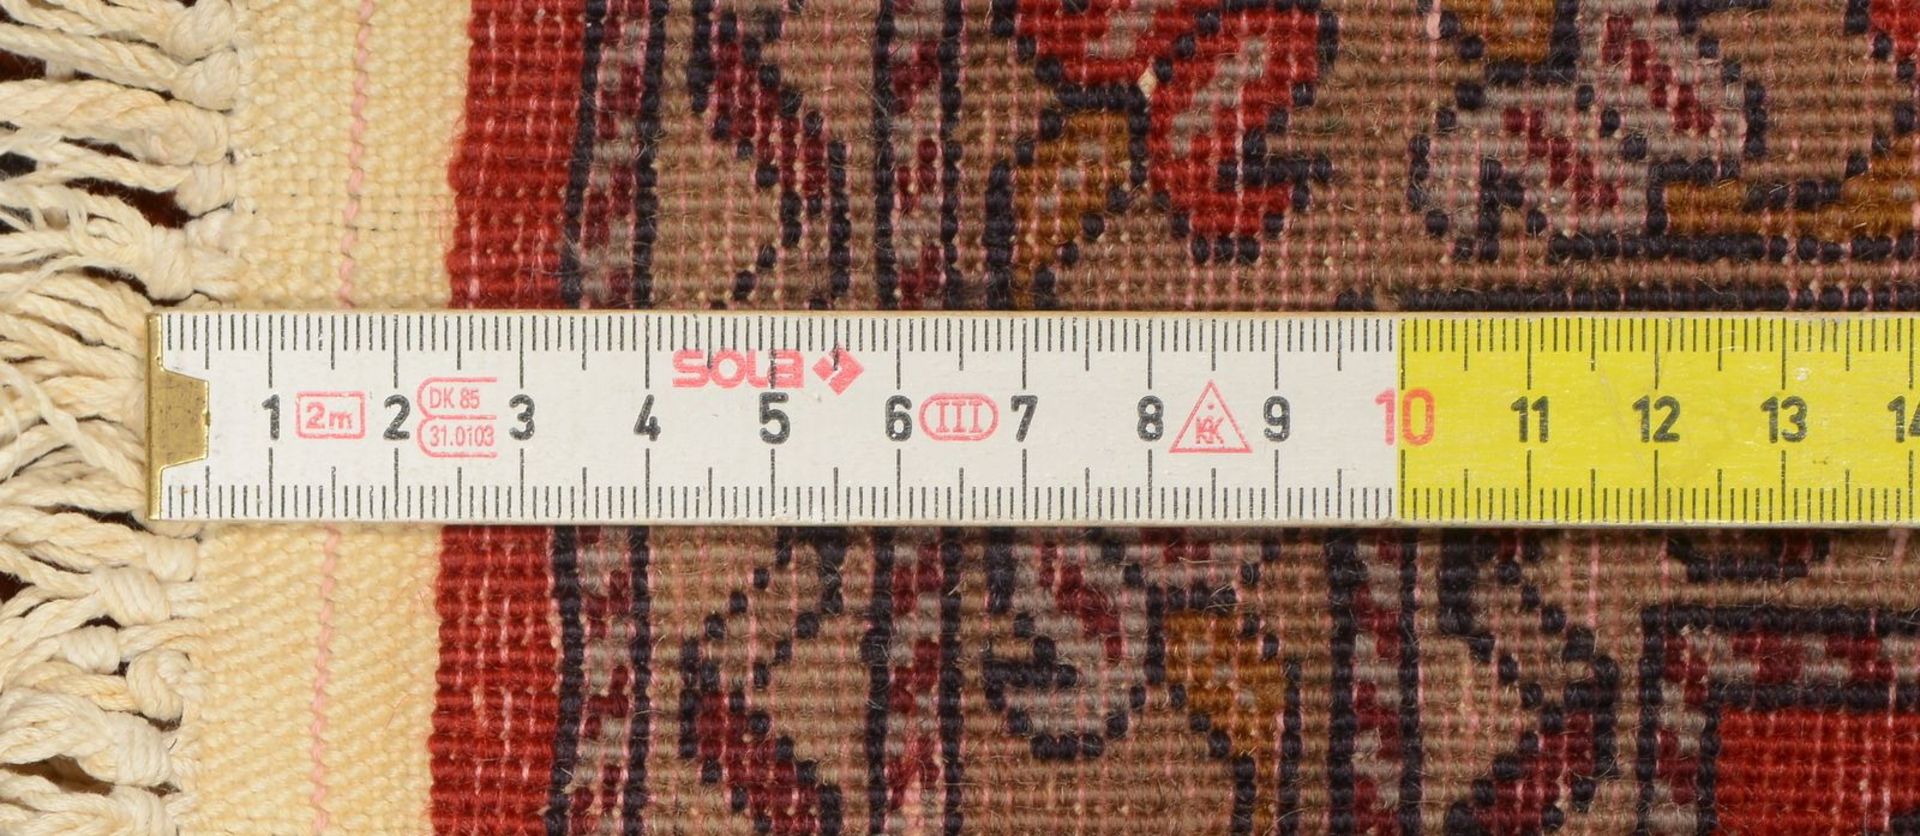 Kleine Orientbr&uuml;cke, Wolle auf Baumwolle, Flor in gutem Zustand; Ma&szlig;e 128 x 79 cm - Image 2 of 2